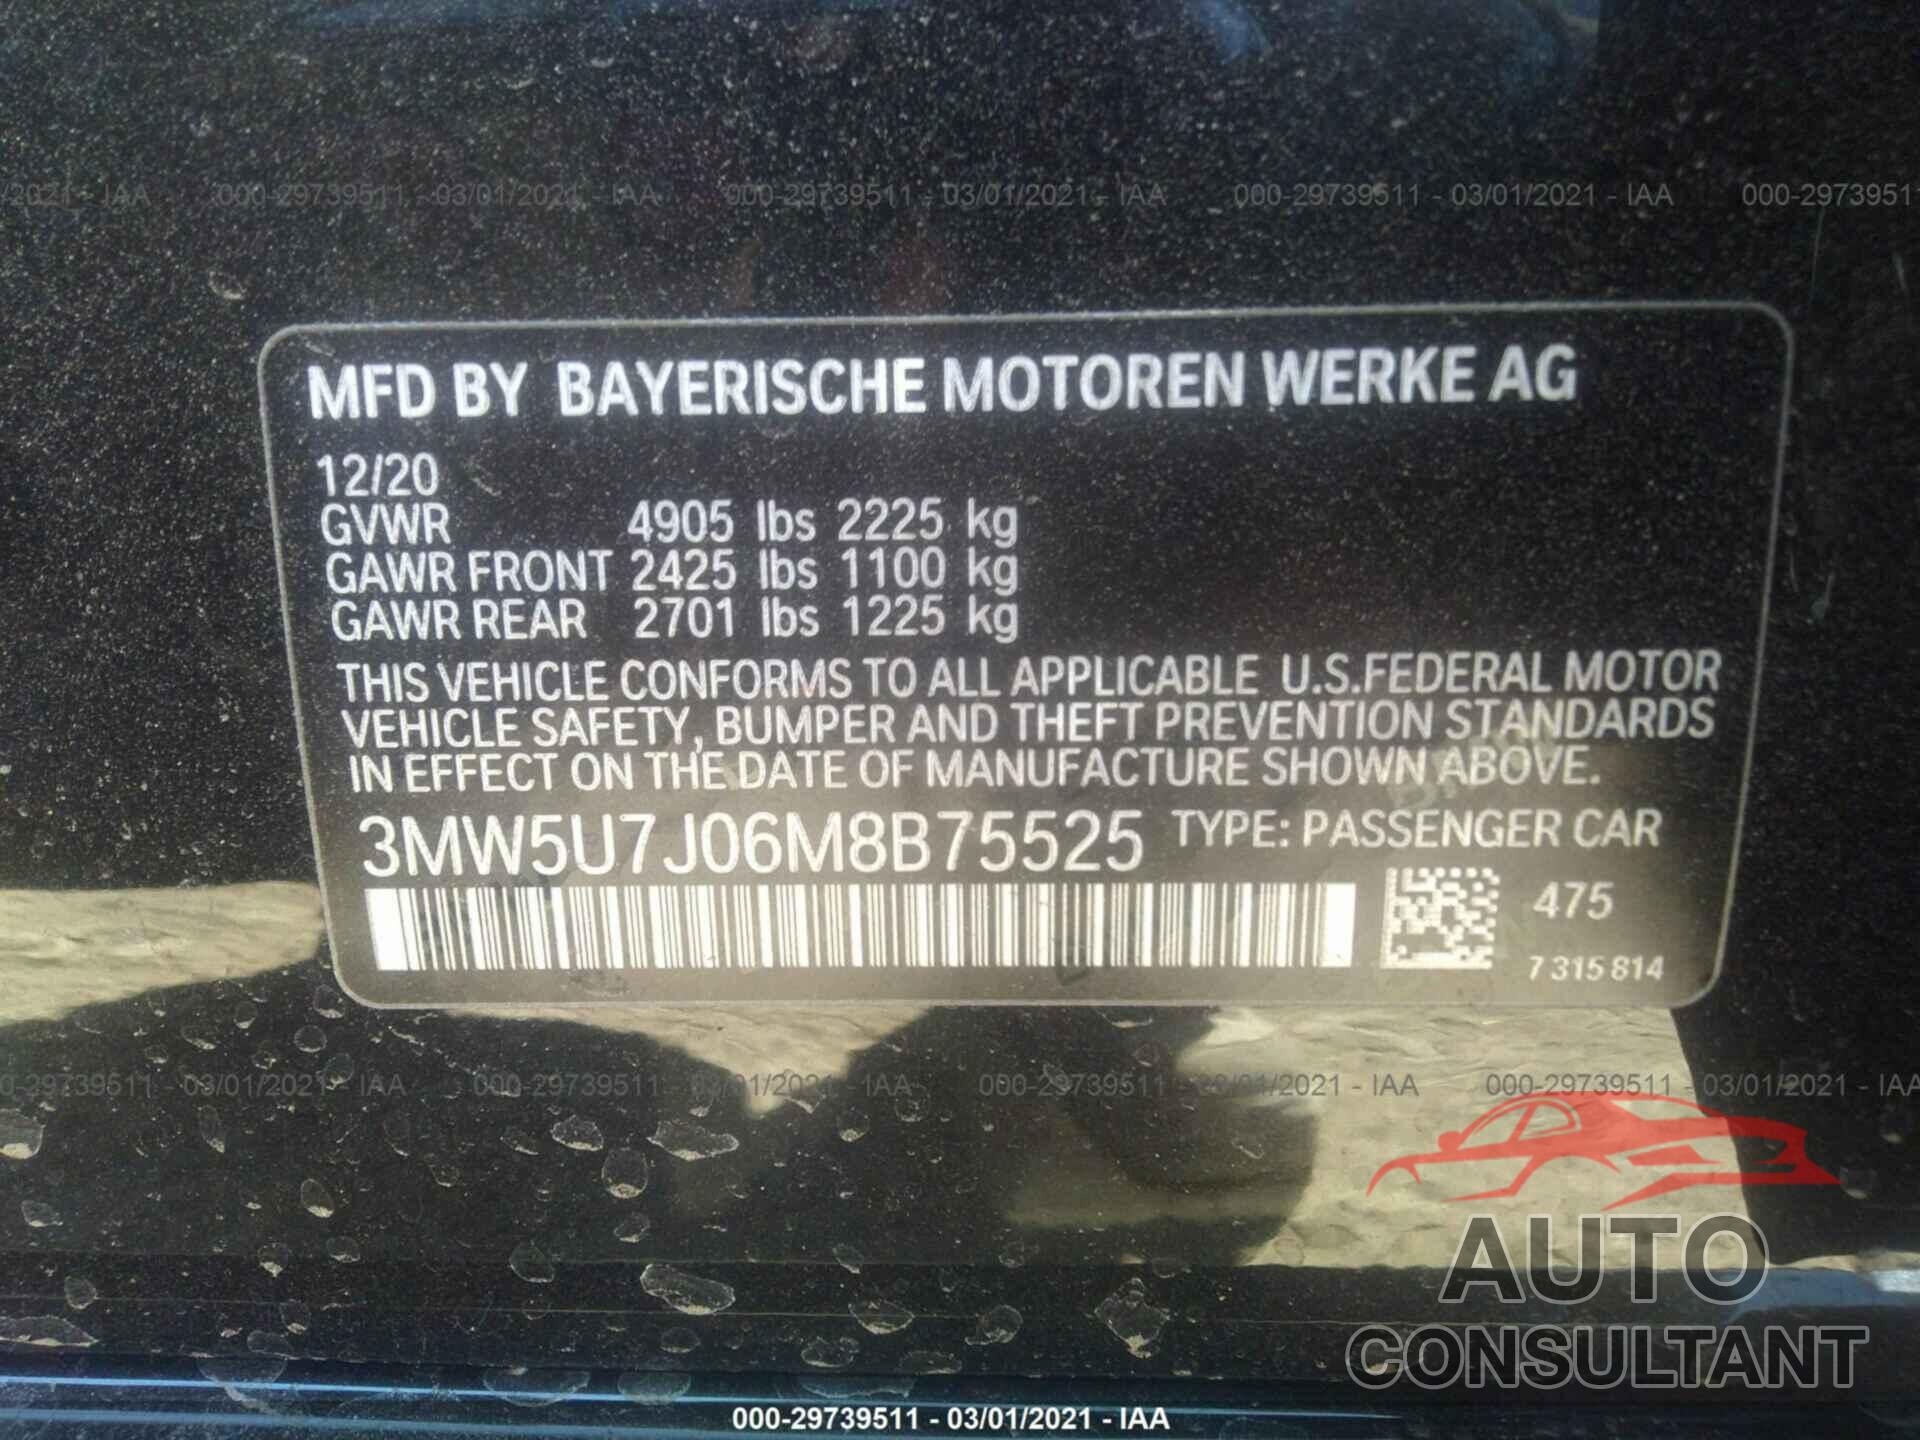 BMW 3 SERIES 2021 - 3MW5U7J06M8B75525